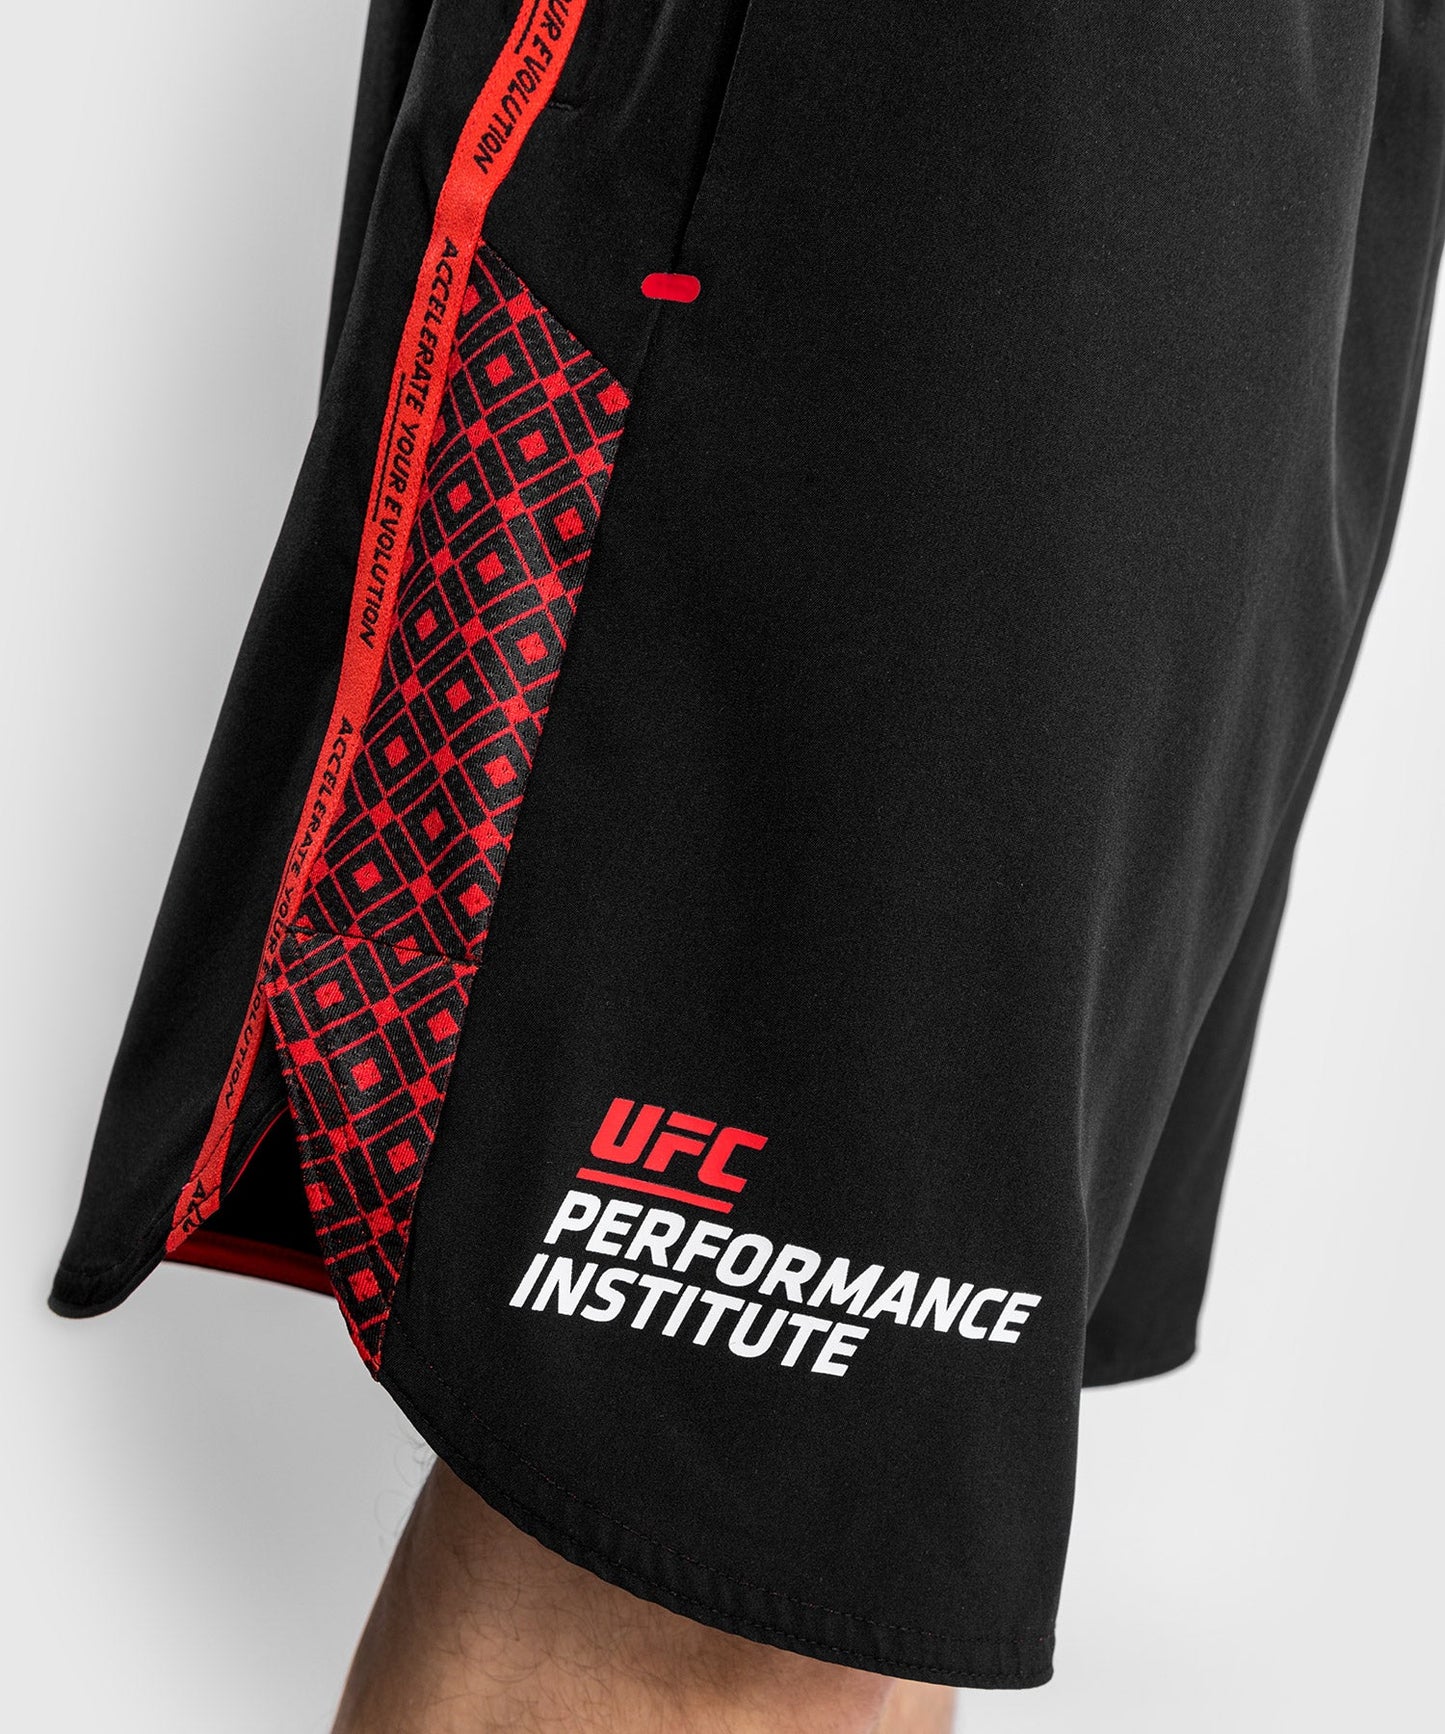 UFC Venum Performance Institute Training Short - Black/Red